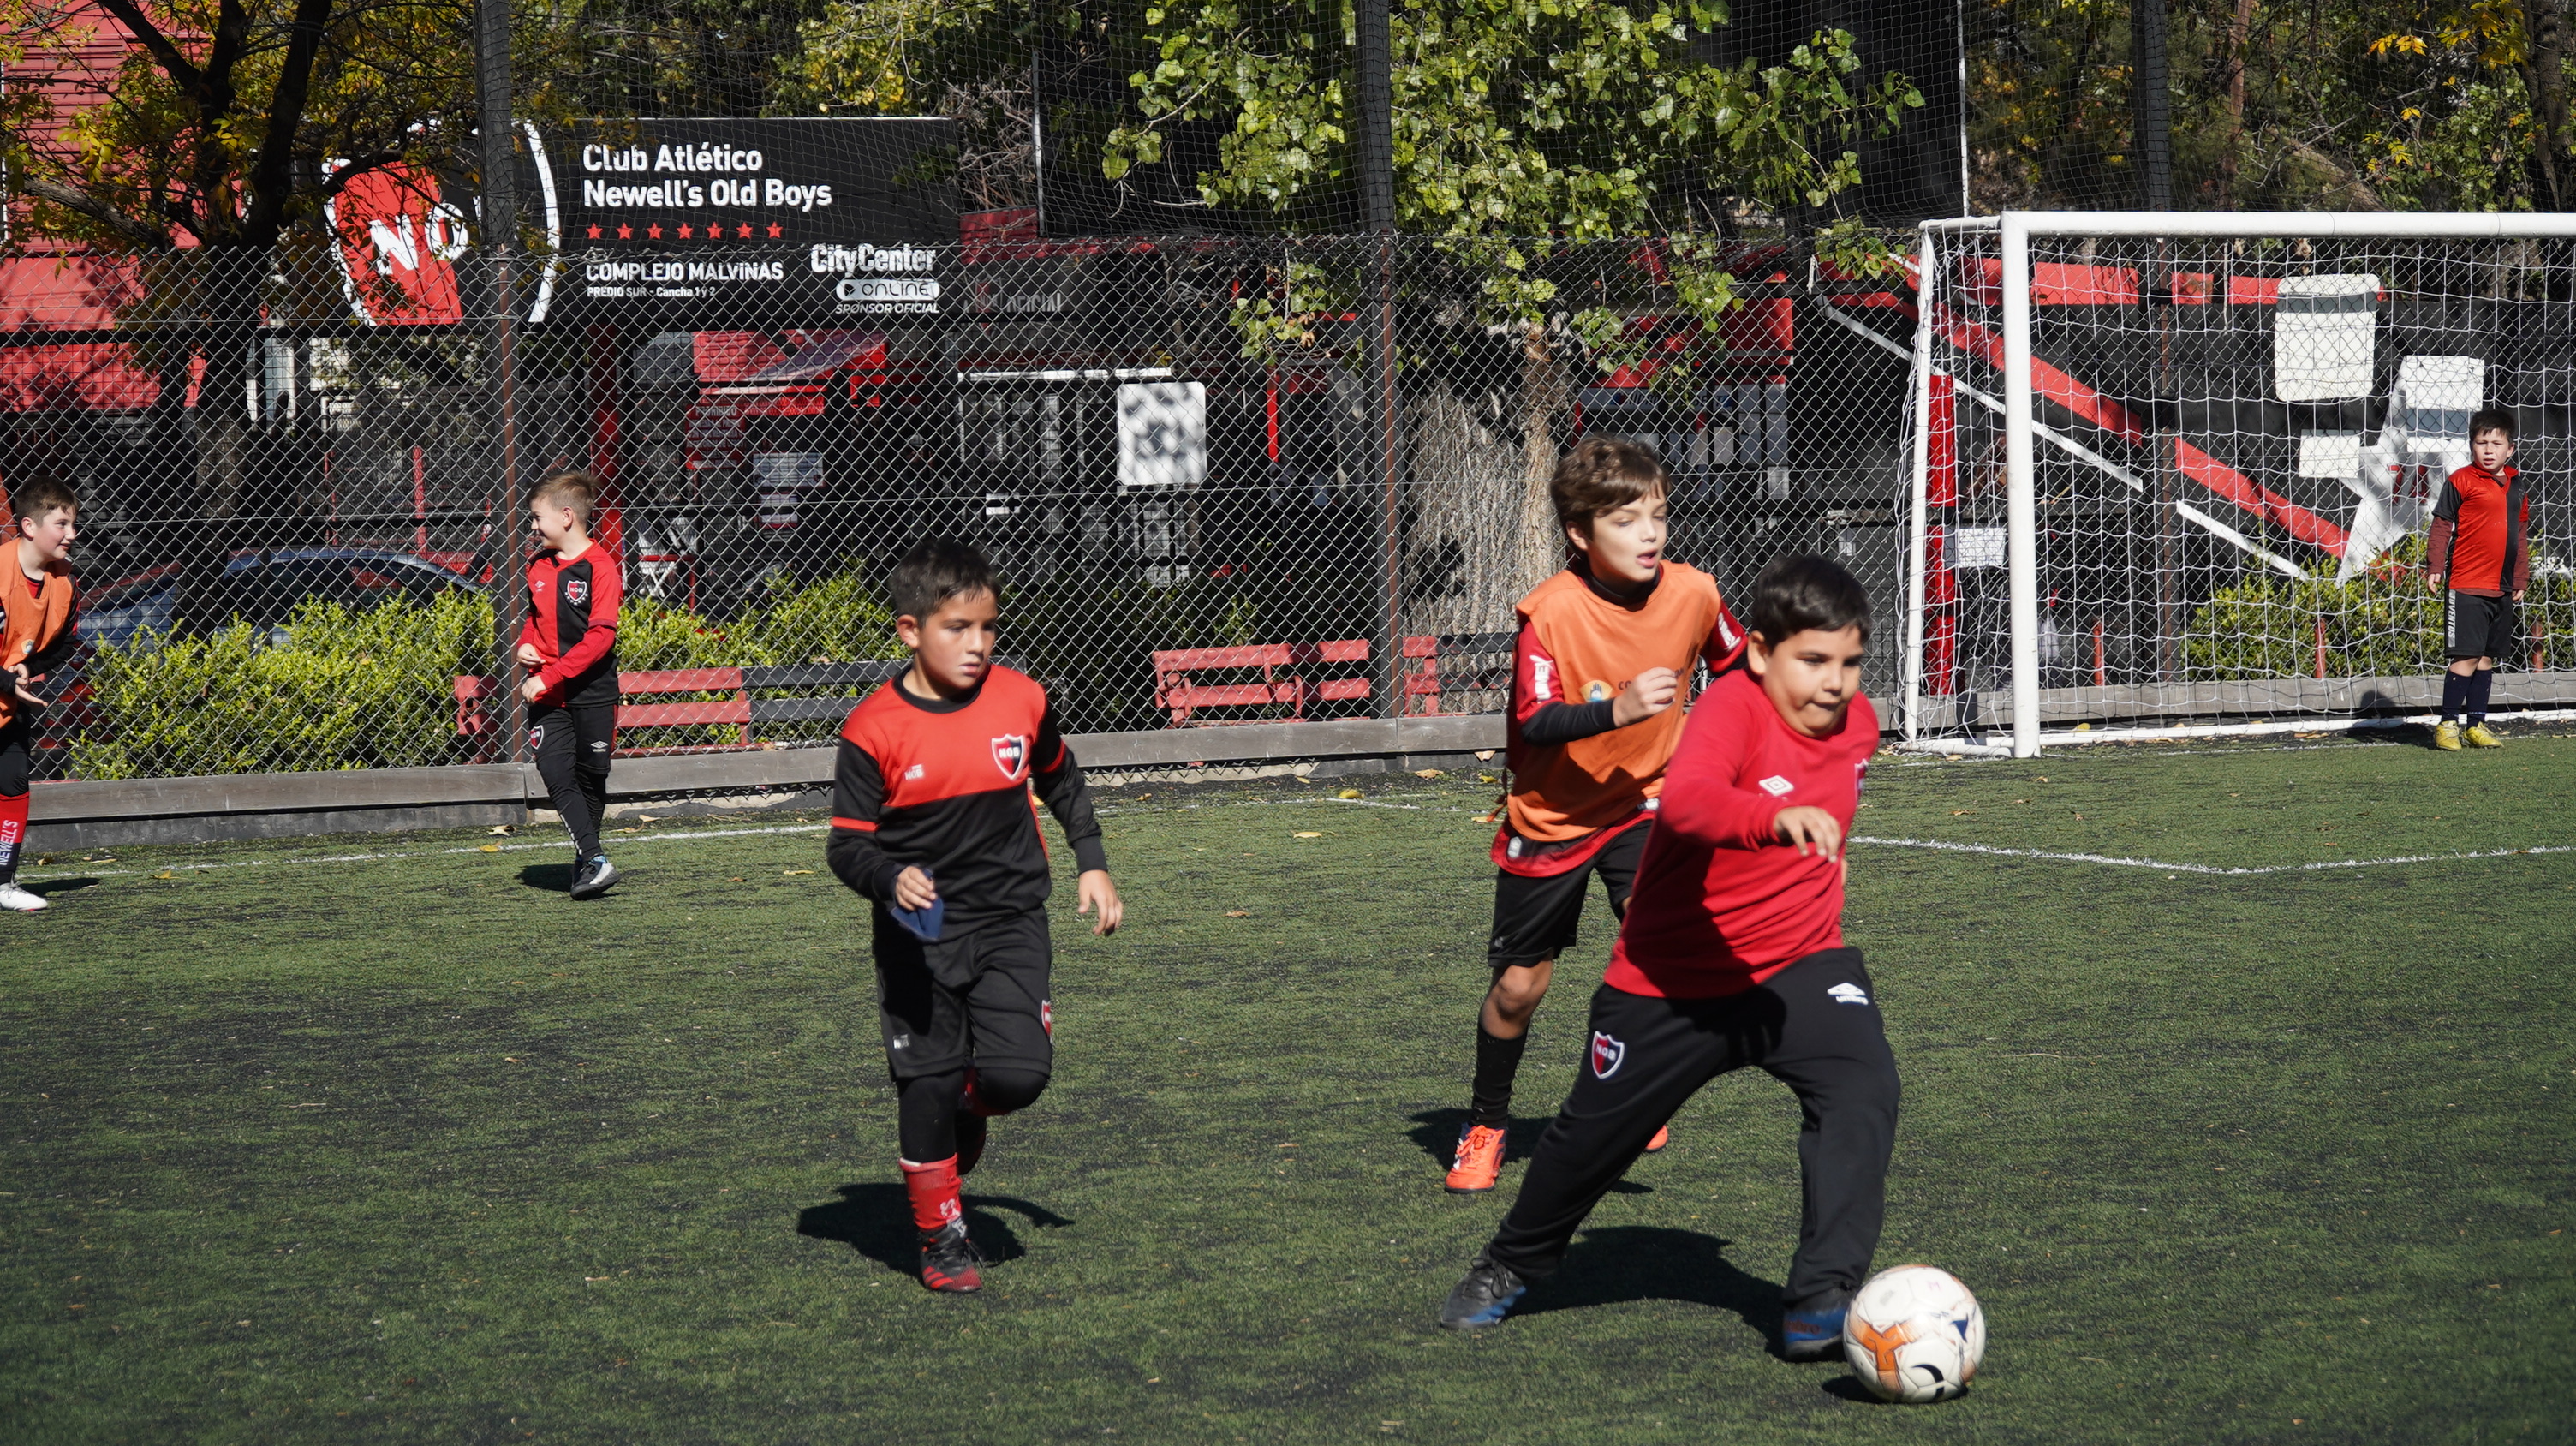 Este mes se prohibieron los cabezazos a menores de 11 años en el fútbol infantil de Rosario, Argentina